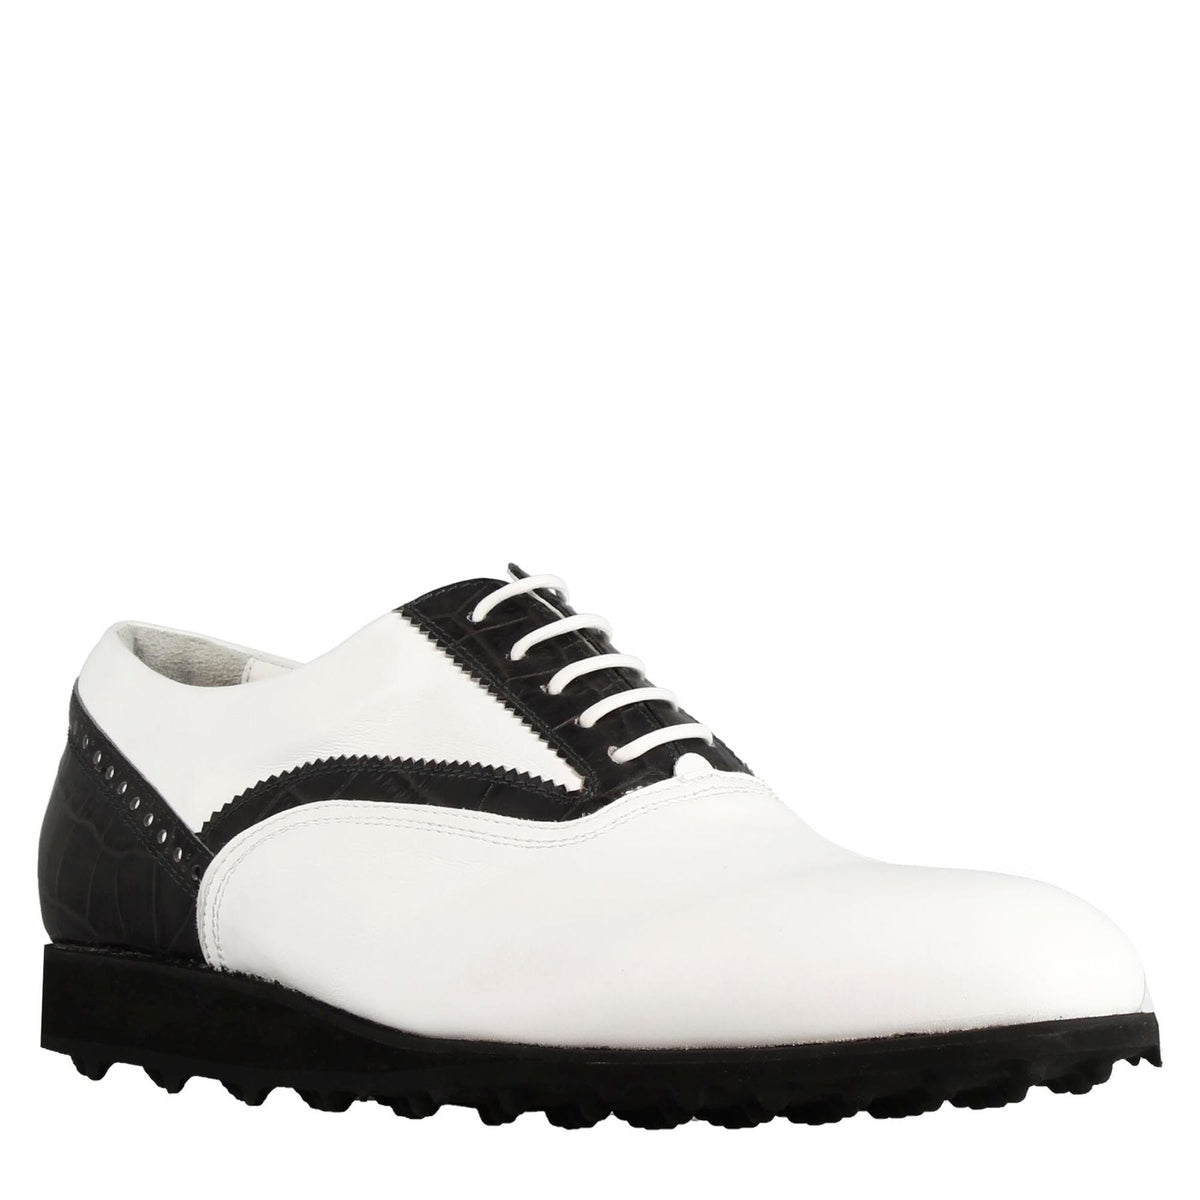 Chaussure de golf pour femme faite à la main en cuir blanc avec détails noirs